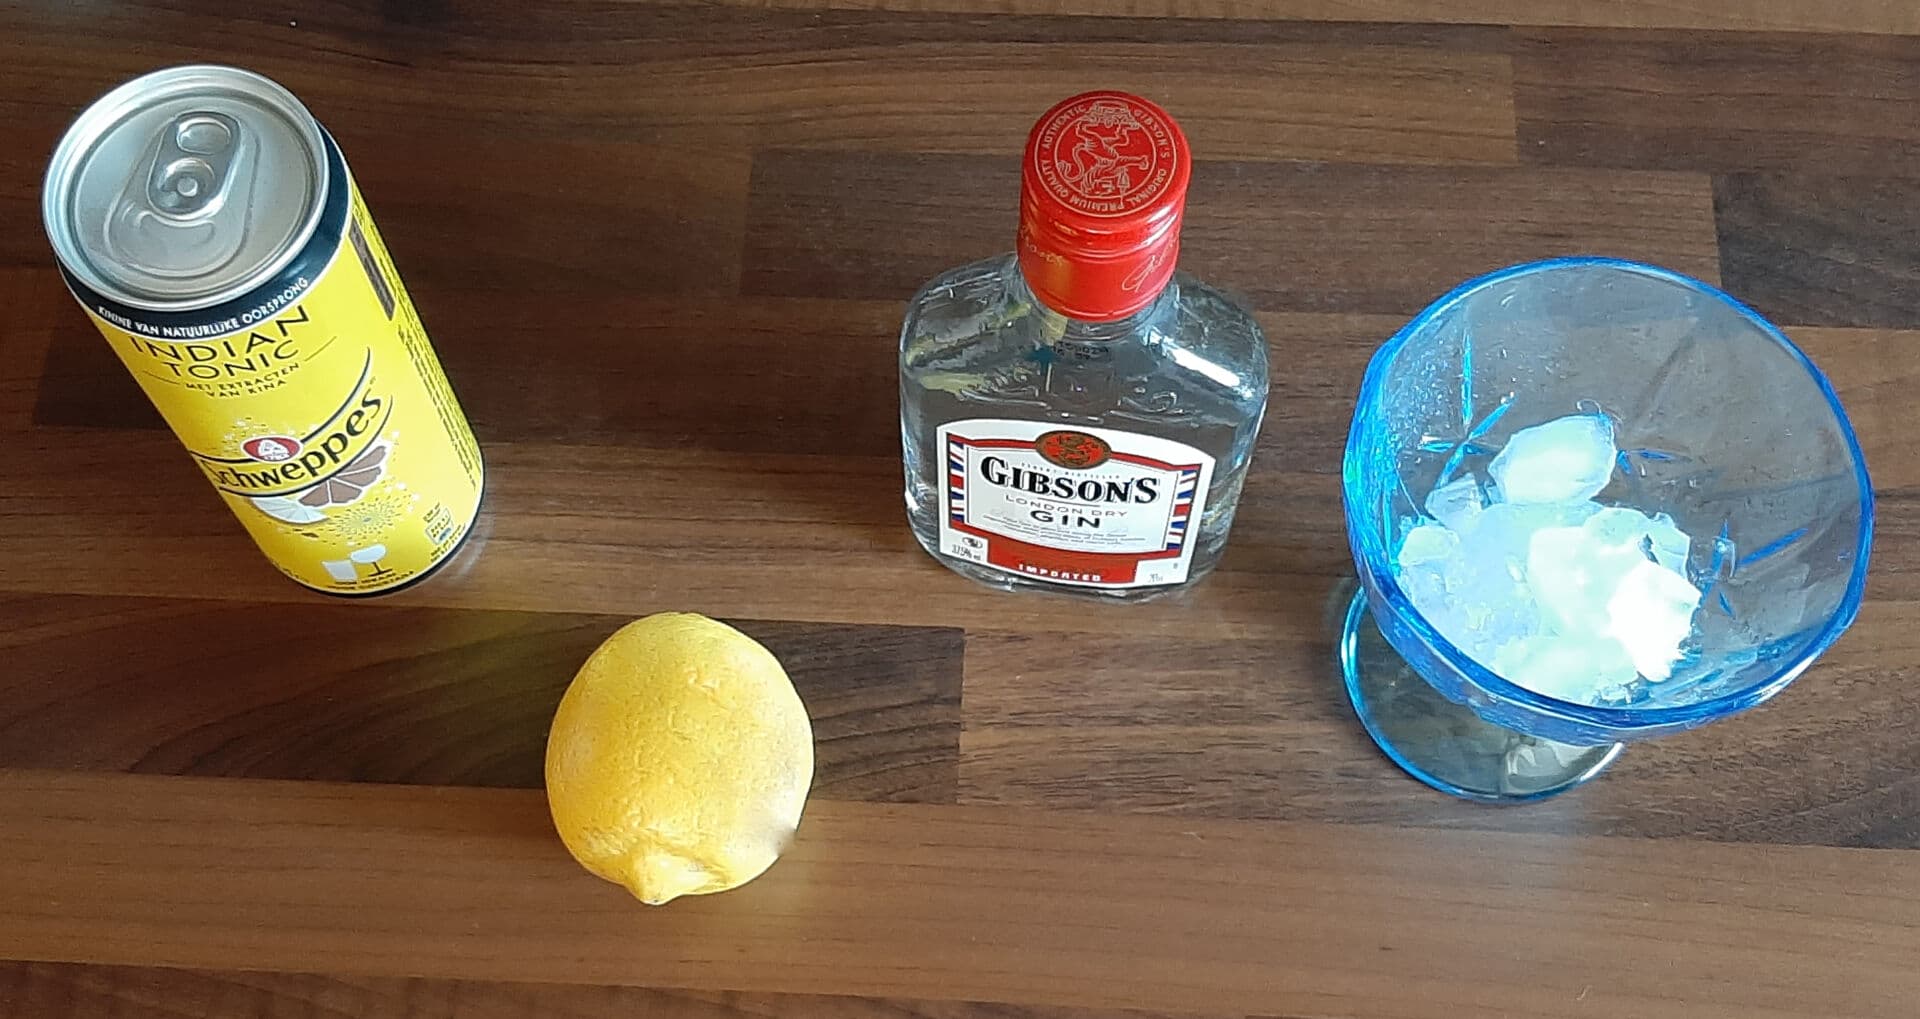 Recette Gin Tonic facile et rapide à préparer